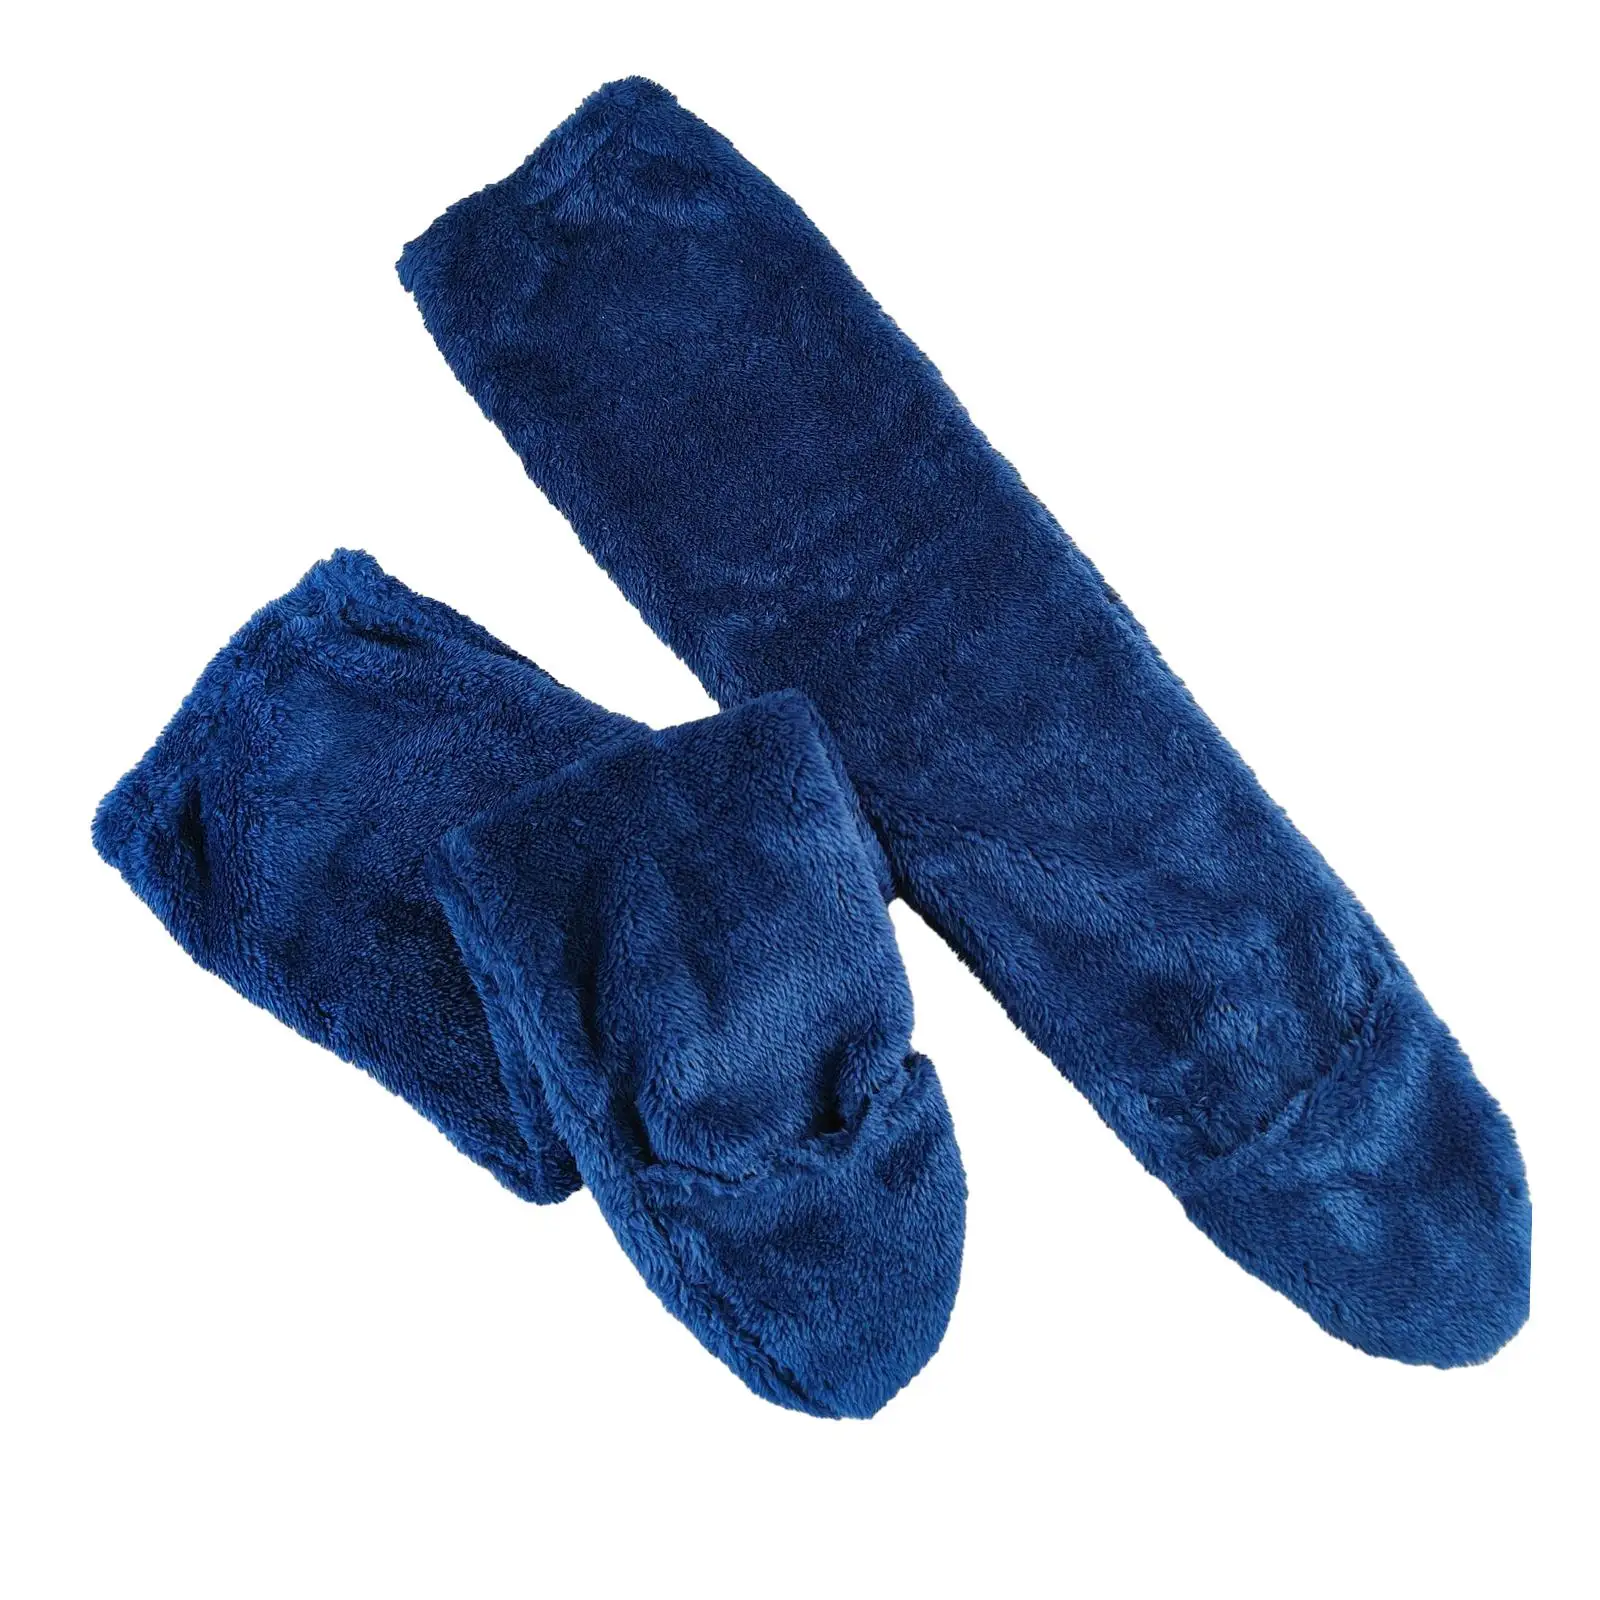 Womens Knee High Socks Home Long Tube Stockings Winter Plush Leg Warmer Thigh High Socks Slipper Stockings for Dorm Bedroom